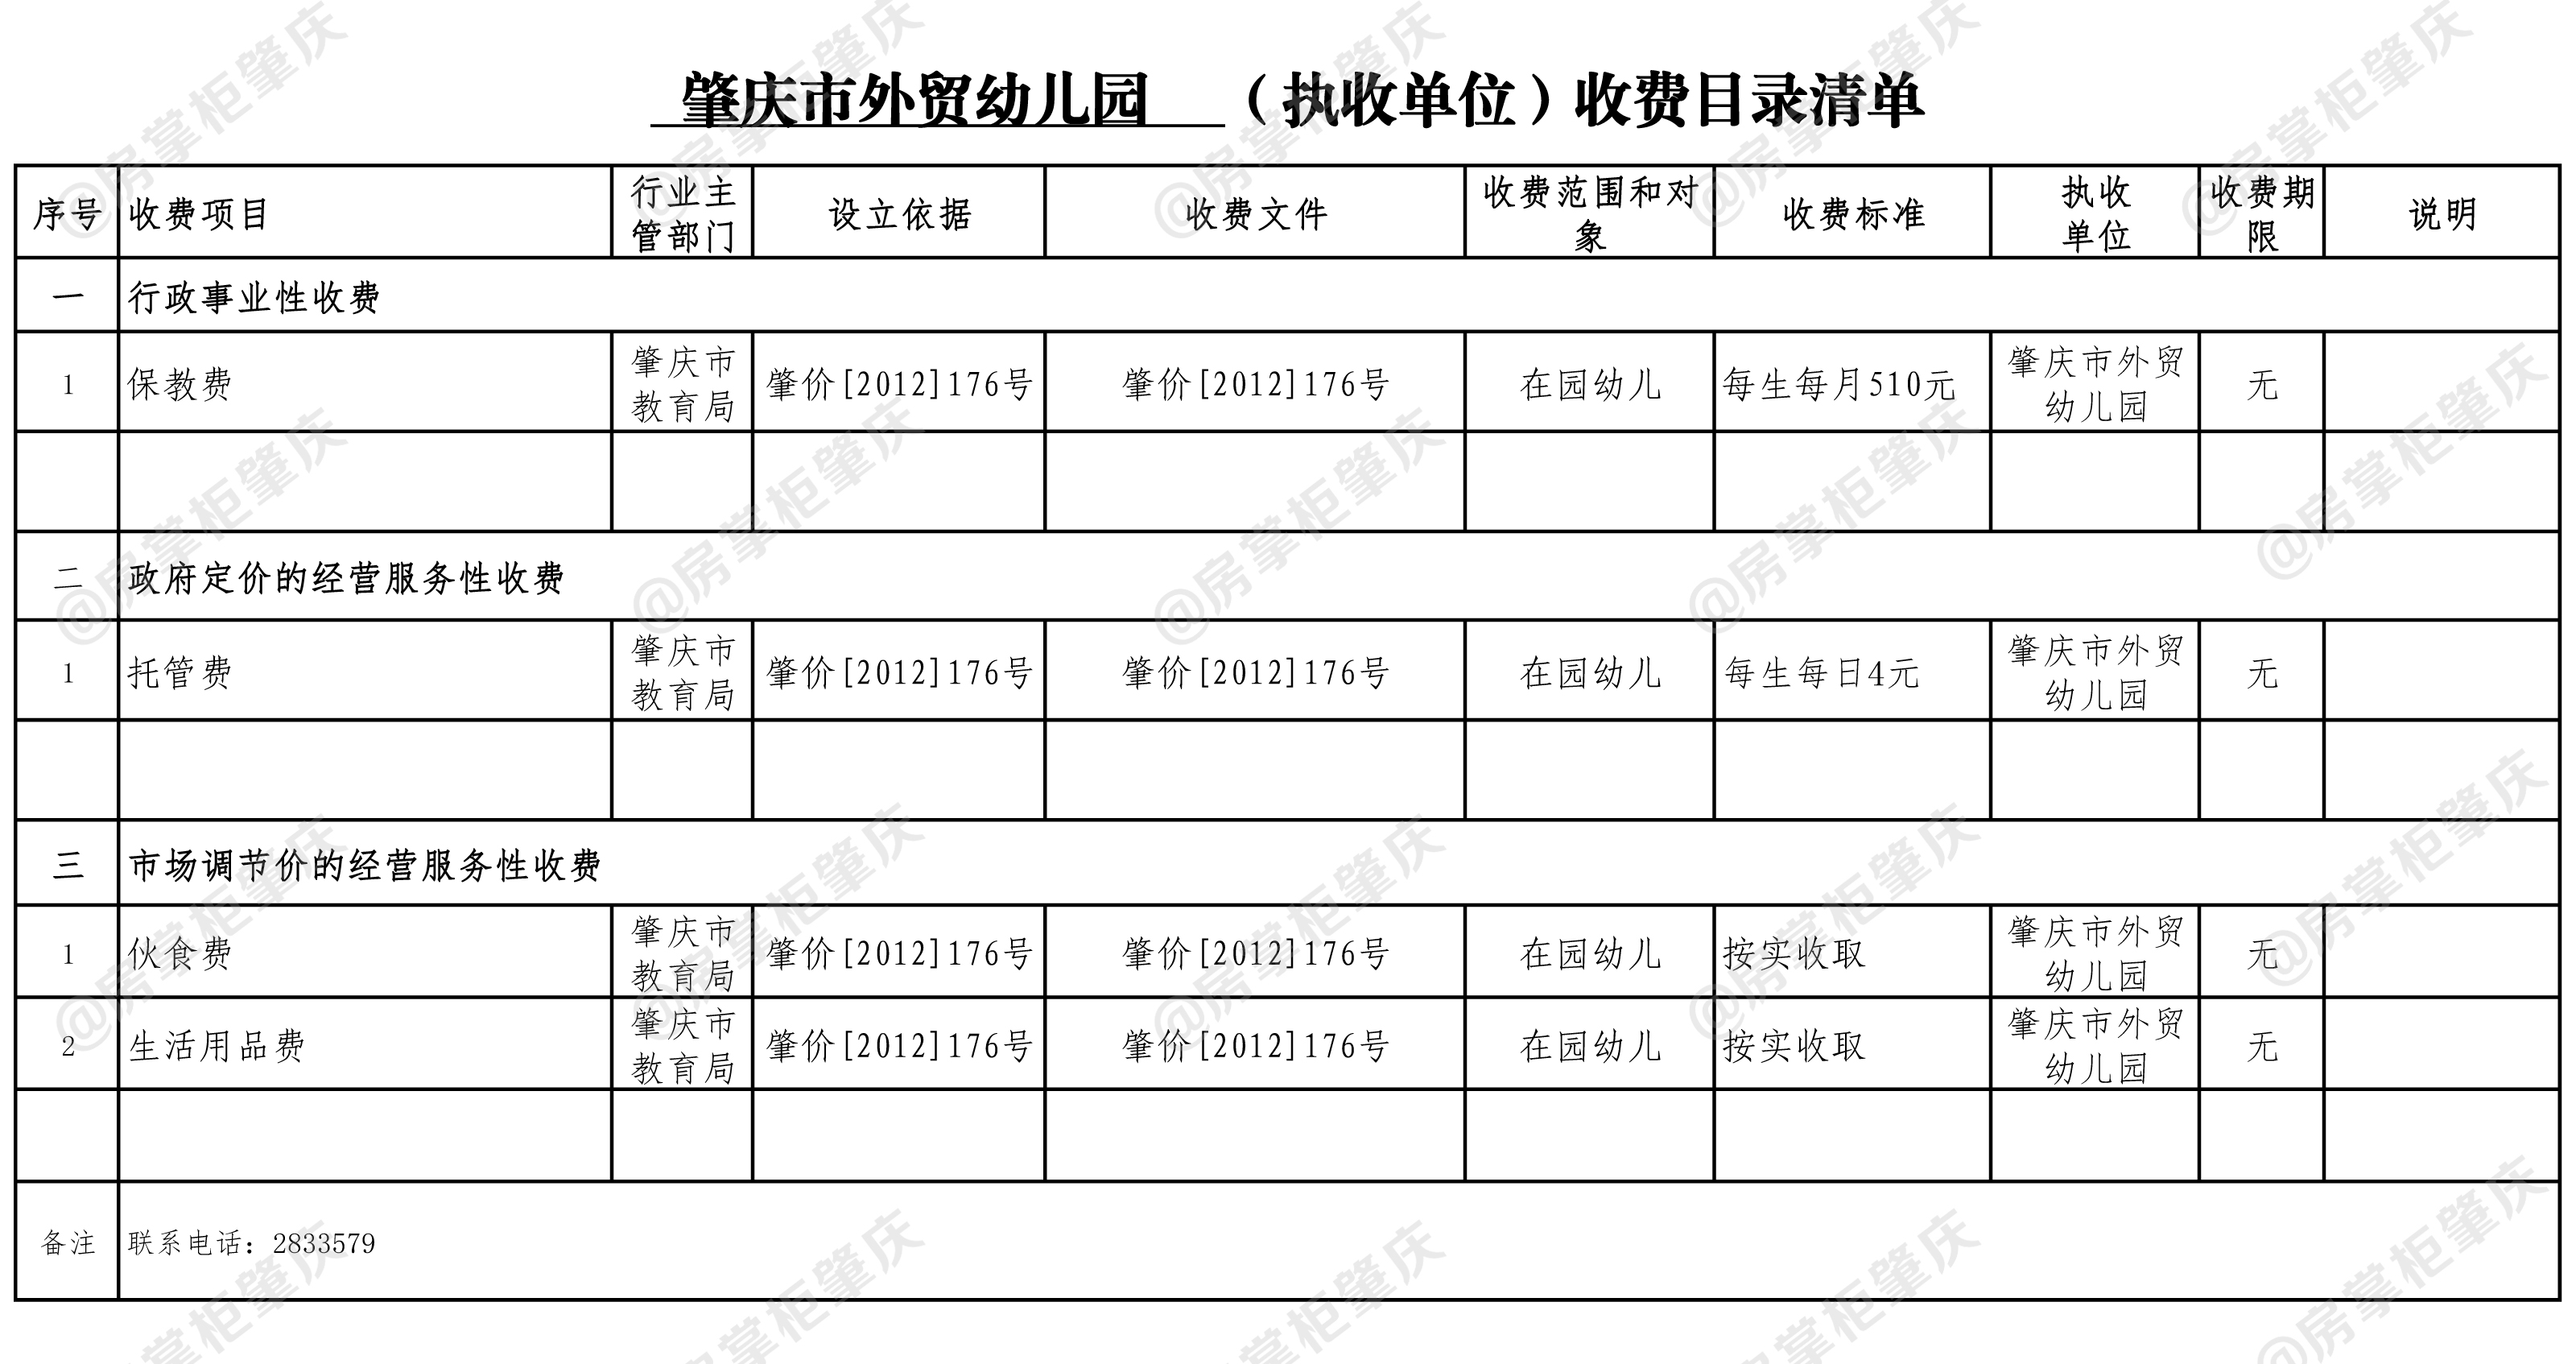 肇庆市外贸幼儿园（执收单位）收费目录清单.jpg